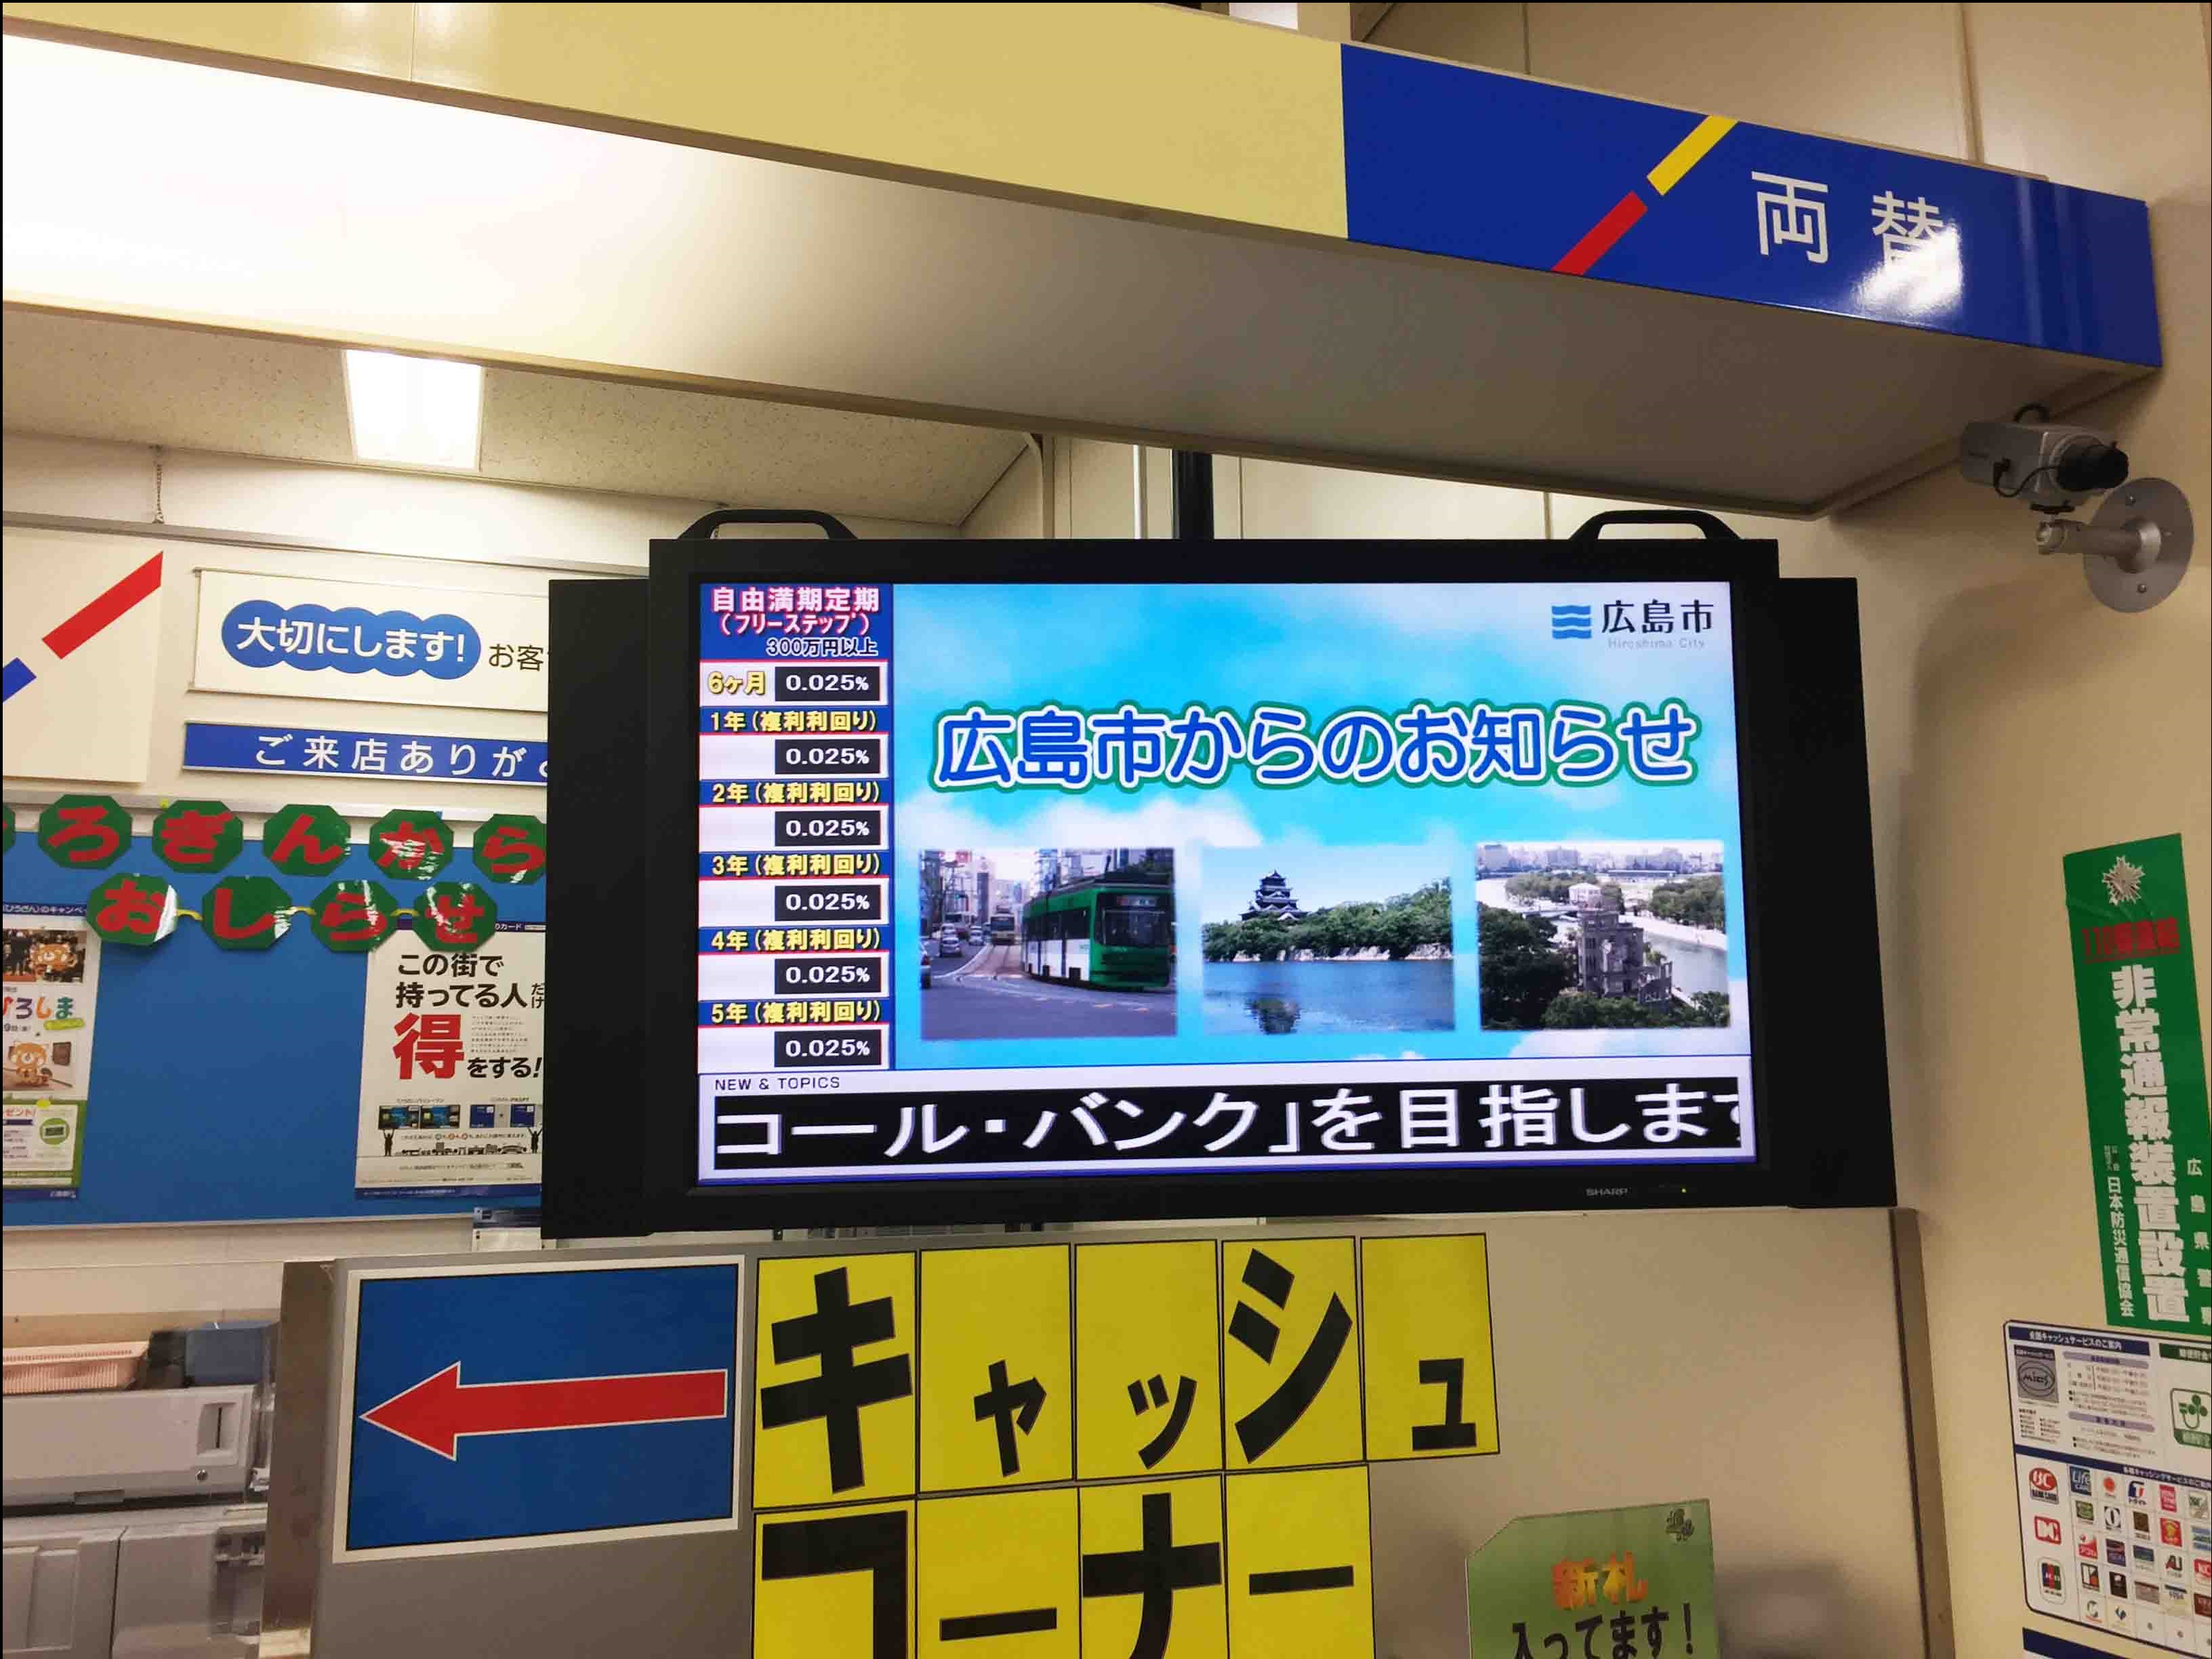 広島銀行の店頭におけるデジタルサイネージの様子の画像